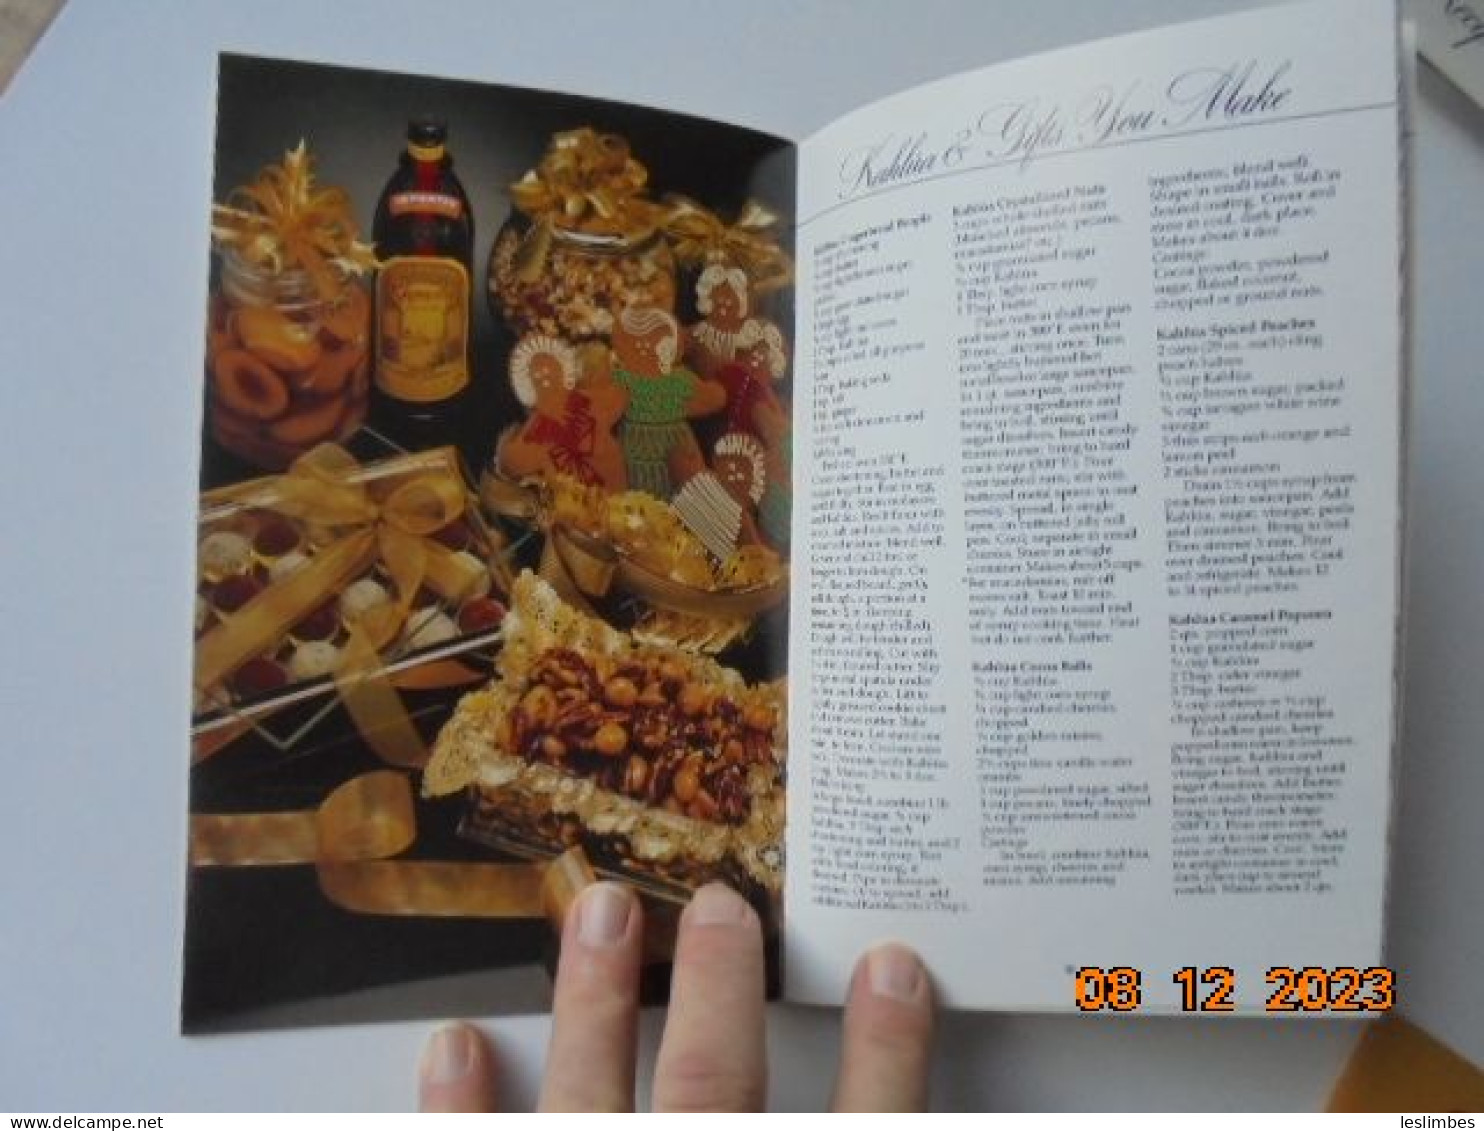 Kahlua Recipe Book - Maidstone Wine & Spirits Inc. 1986 - Américaine